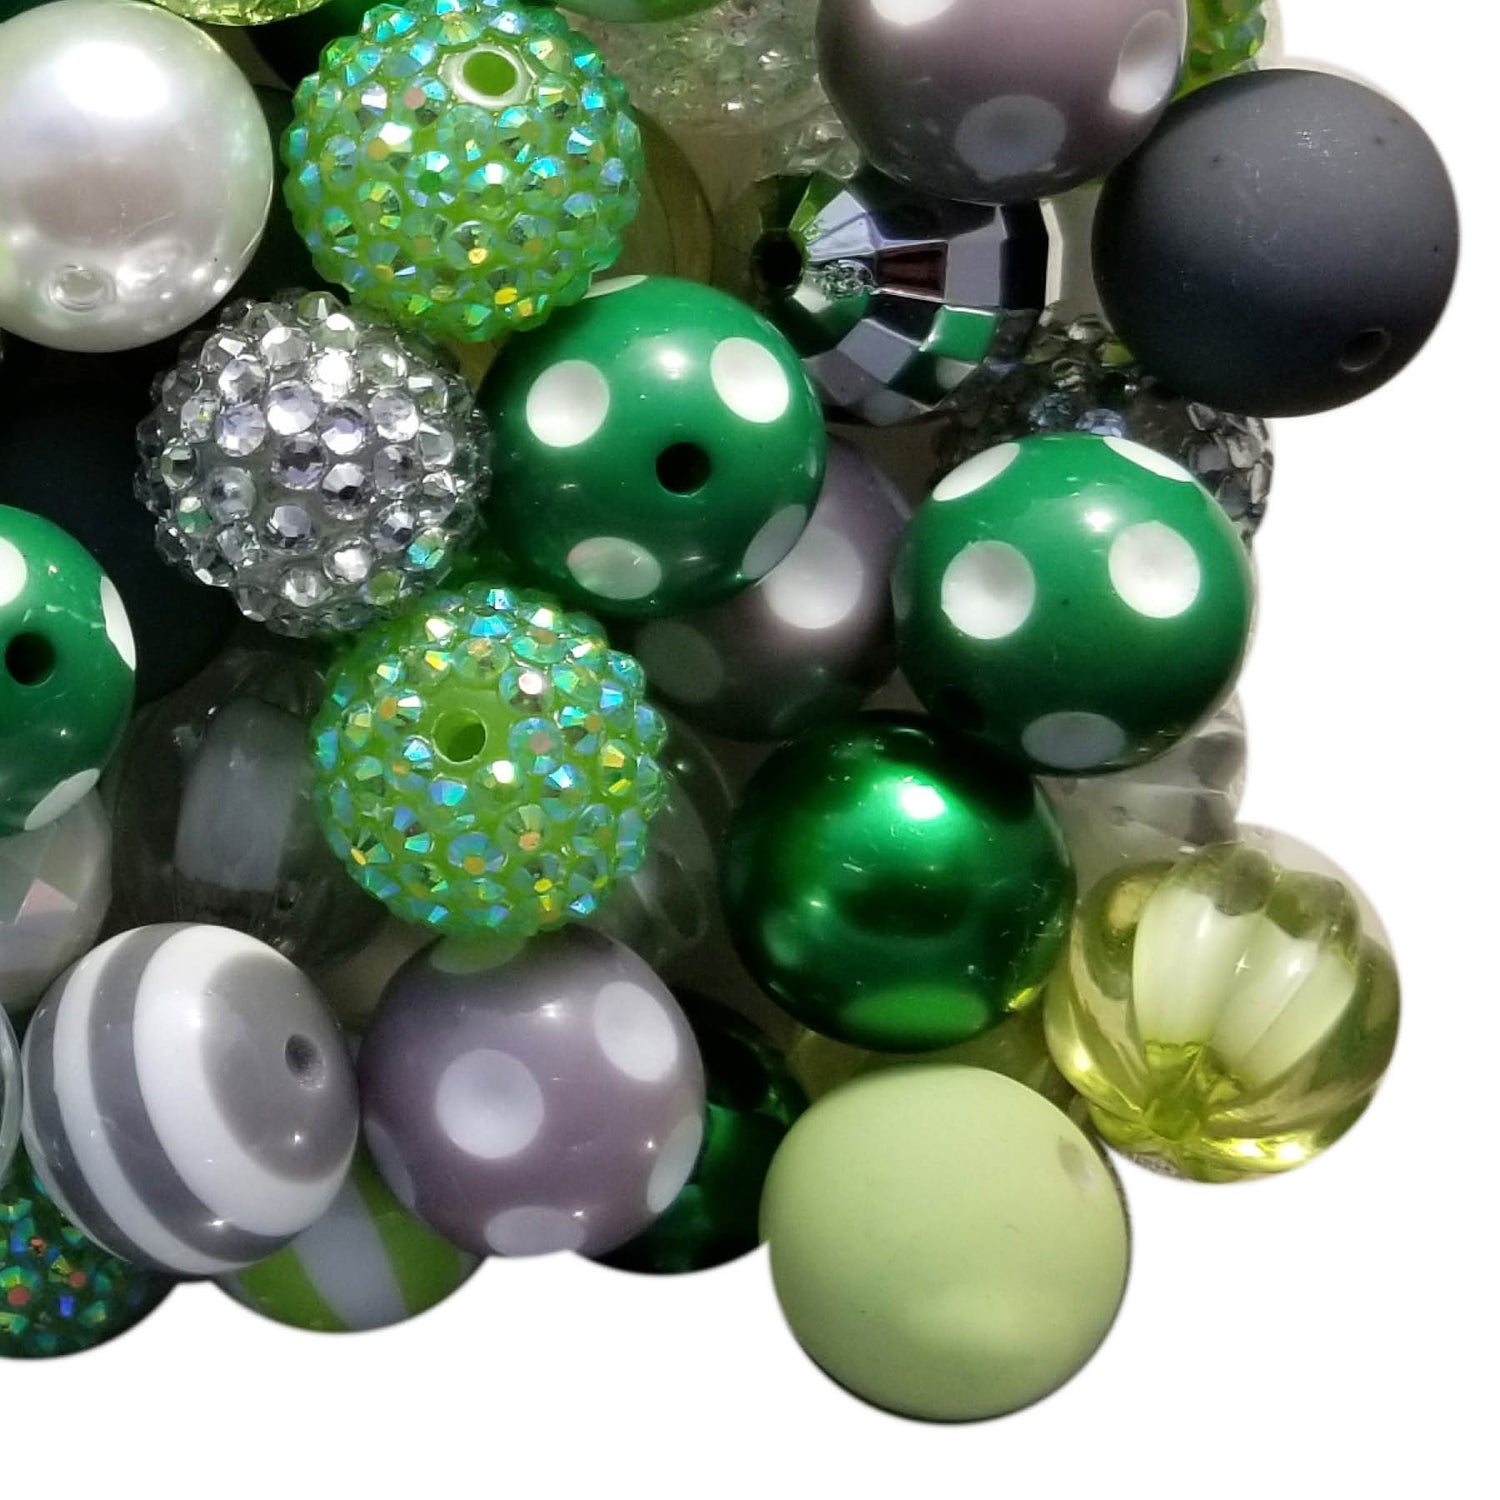 clover fields mixed 20mm bubblegum beads